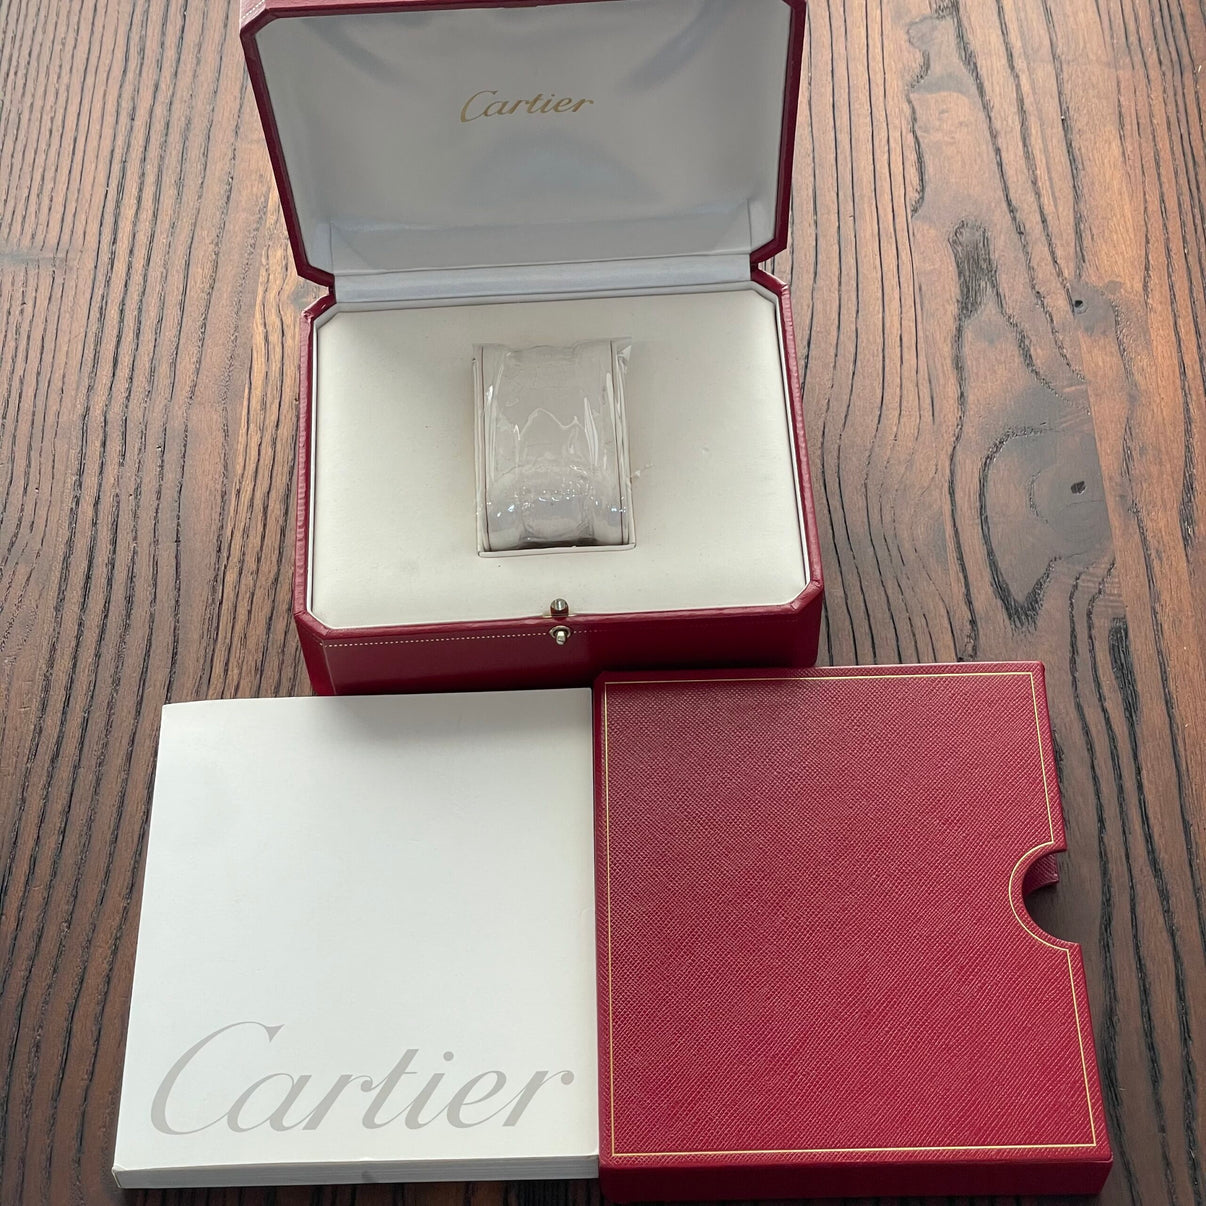 【Cartier】タンクフランセーズSM 18KYG 純正ボックス付き